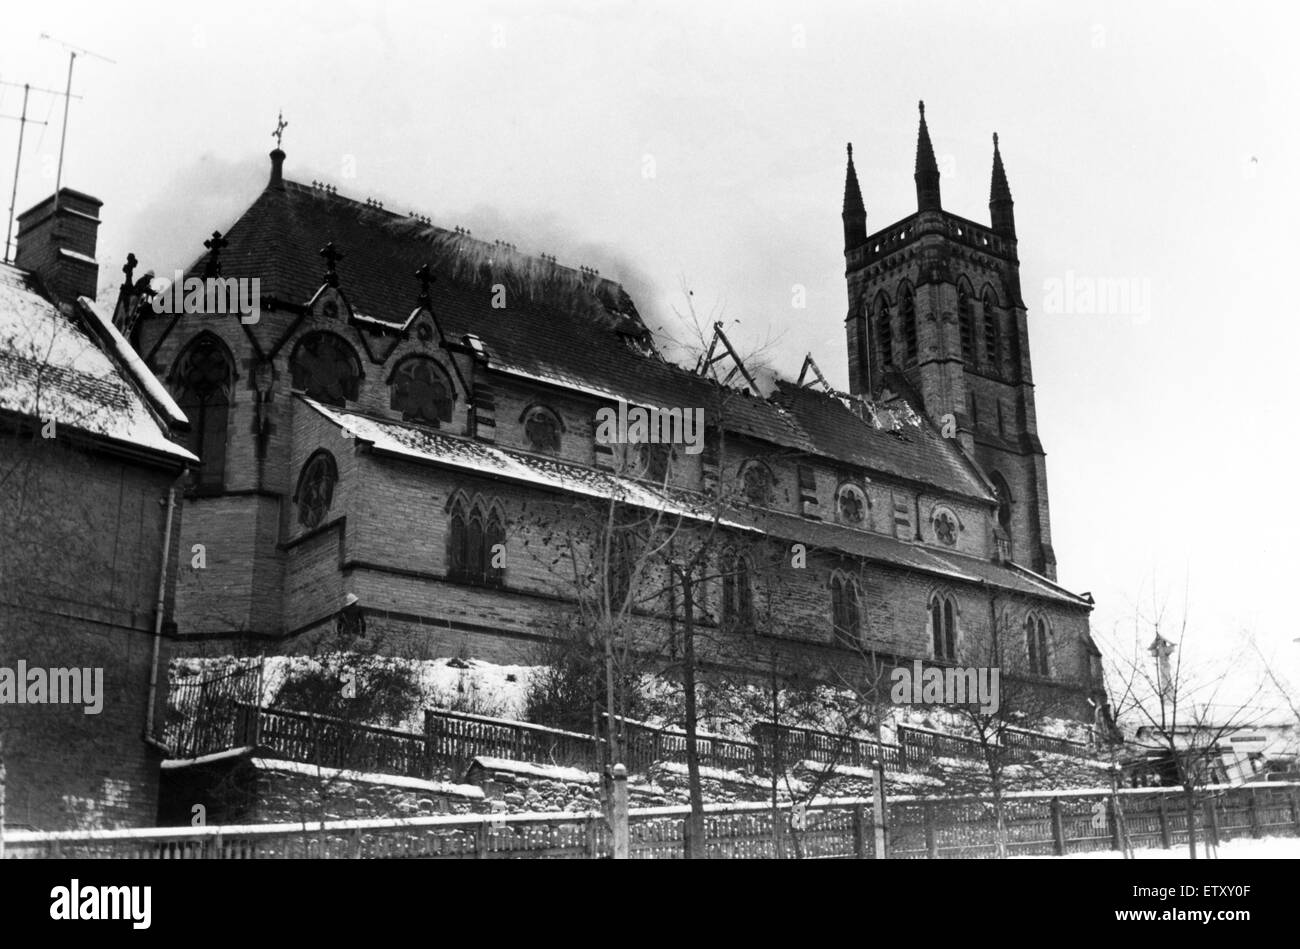 St Godric römisch-katholische Kirche in Durham Stadt, die von den Flammen verschlungen wurde. Abschnitte von Kirchendach reduziert. 14. Januar 1985. Stockfoto